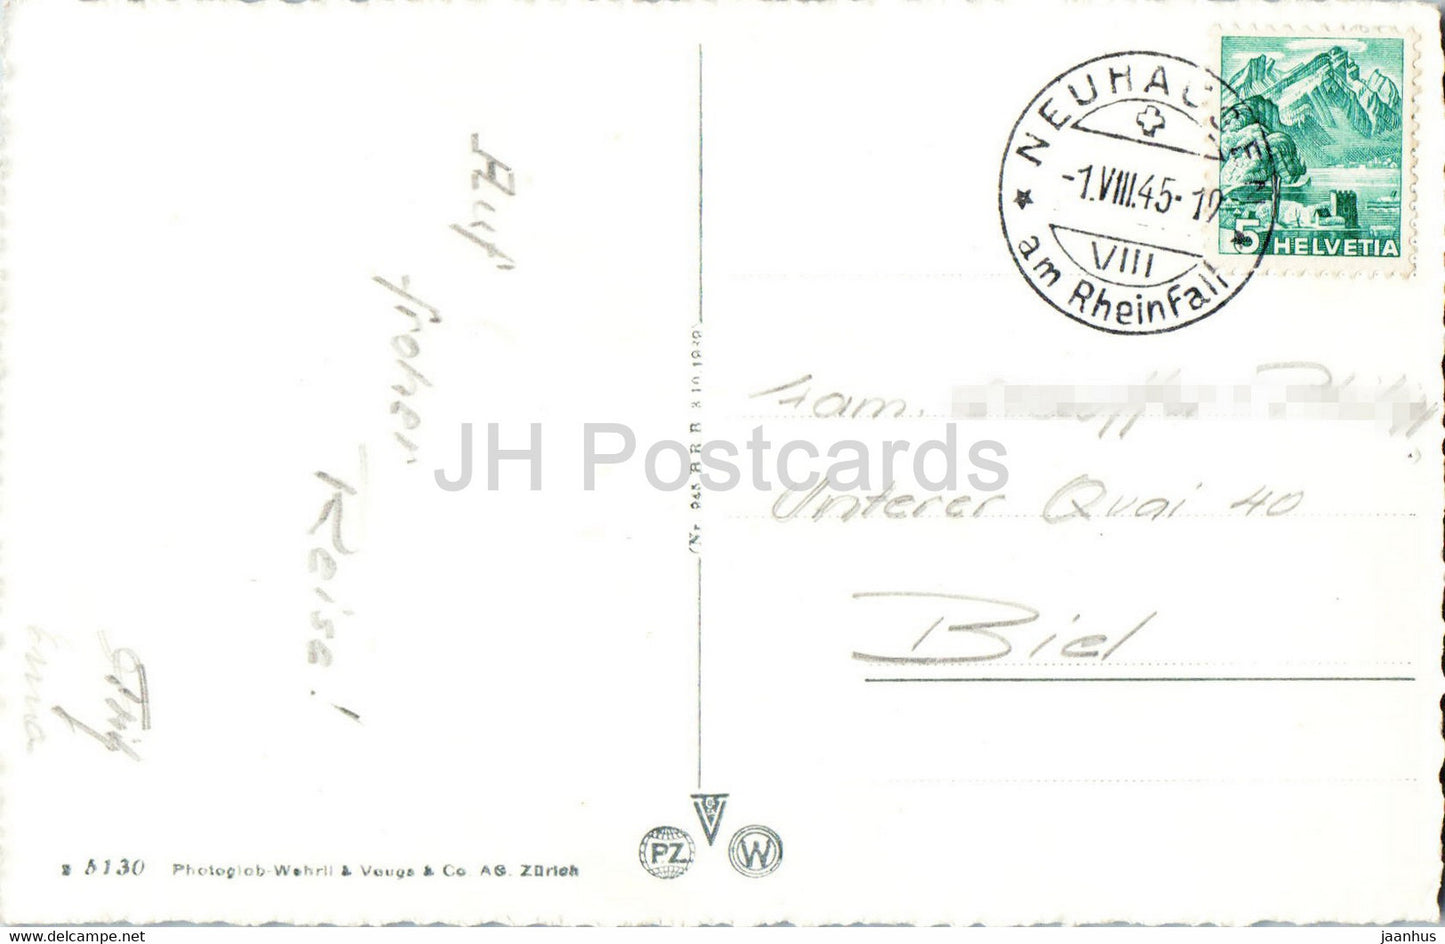 Schaffhouse - Rheinbrucke mit Munot - pont - 5130 - carte postale ancienne - 1945 - Suisse - utilisé